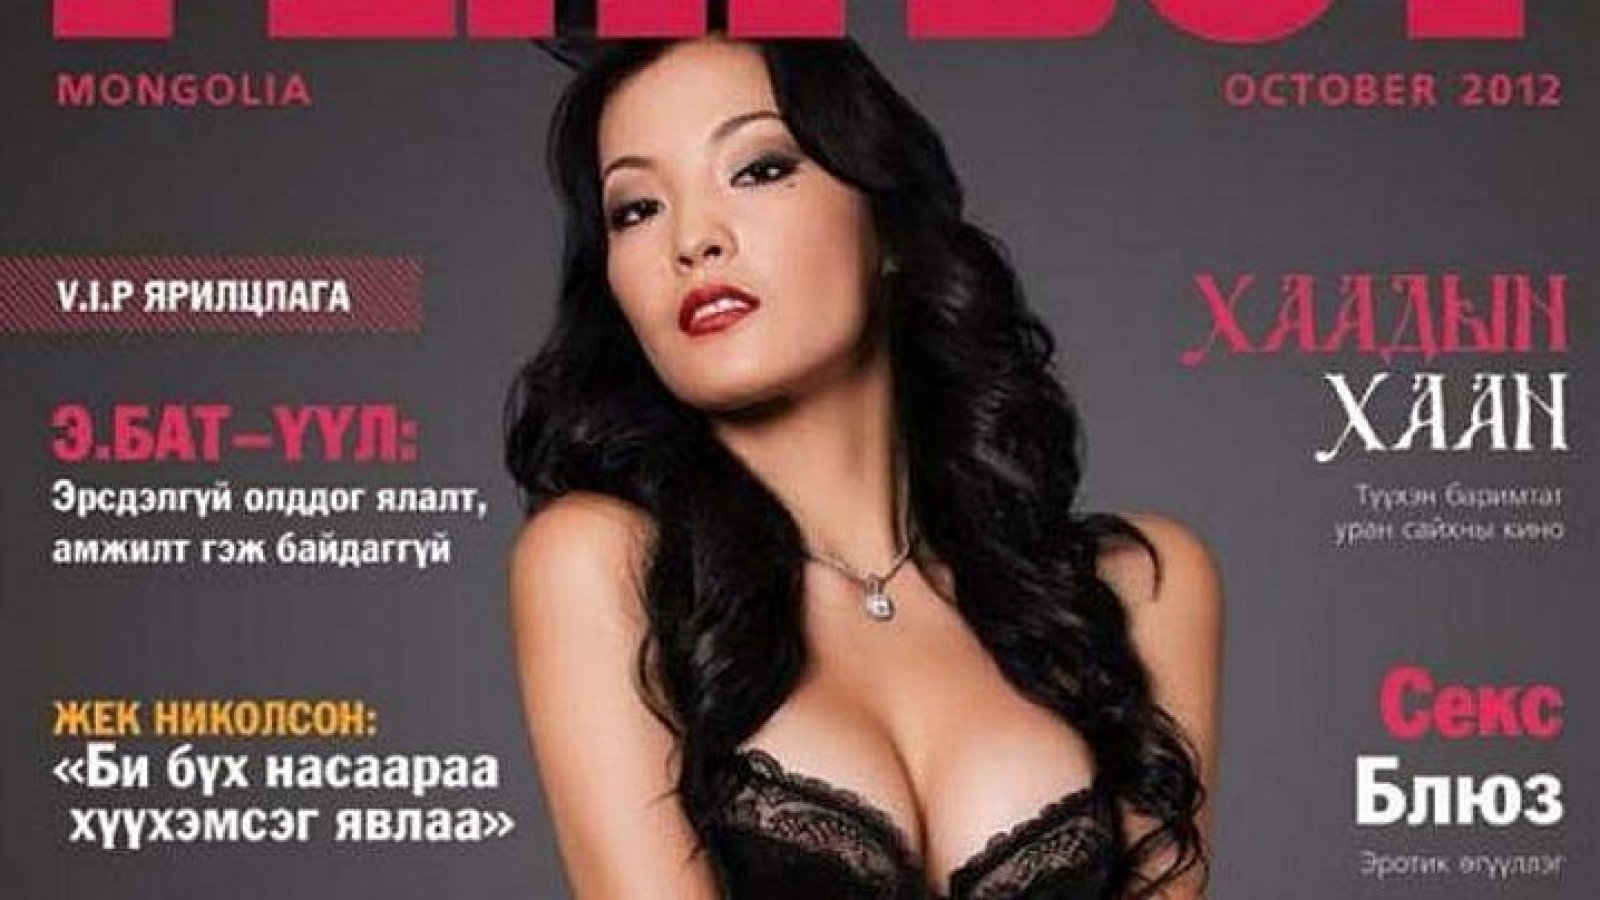 Монгольским мужчинам запретили пользоваться услугами китайских проституток